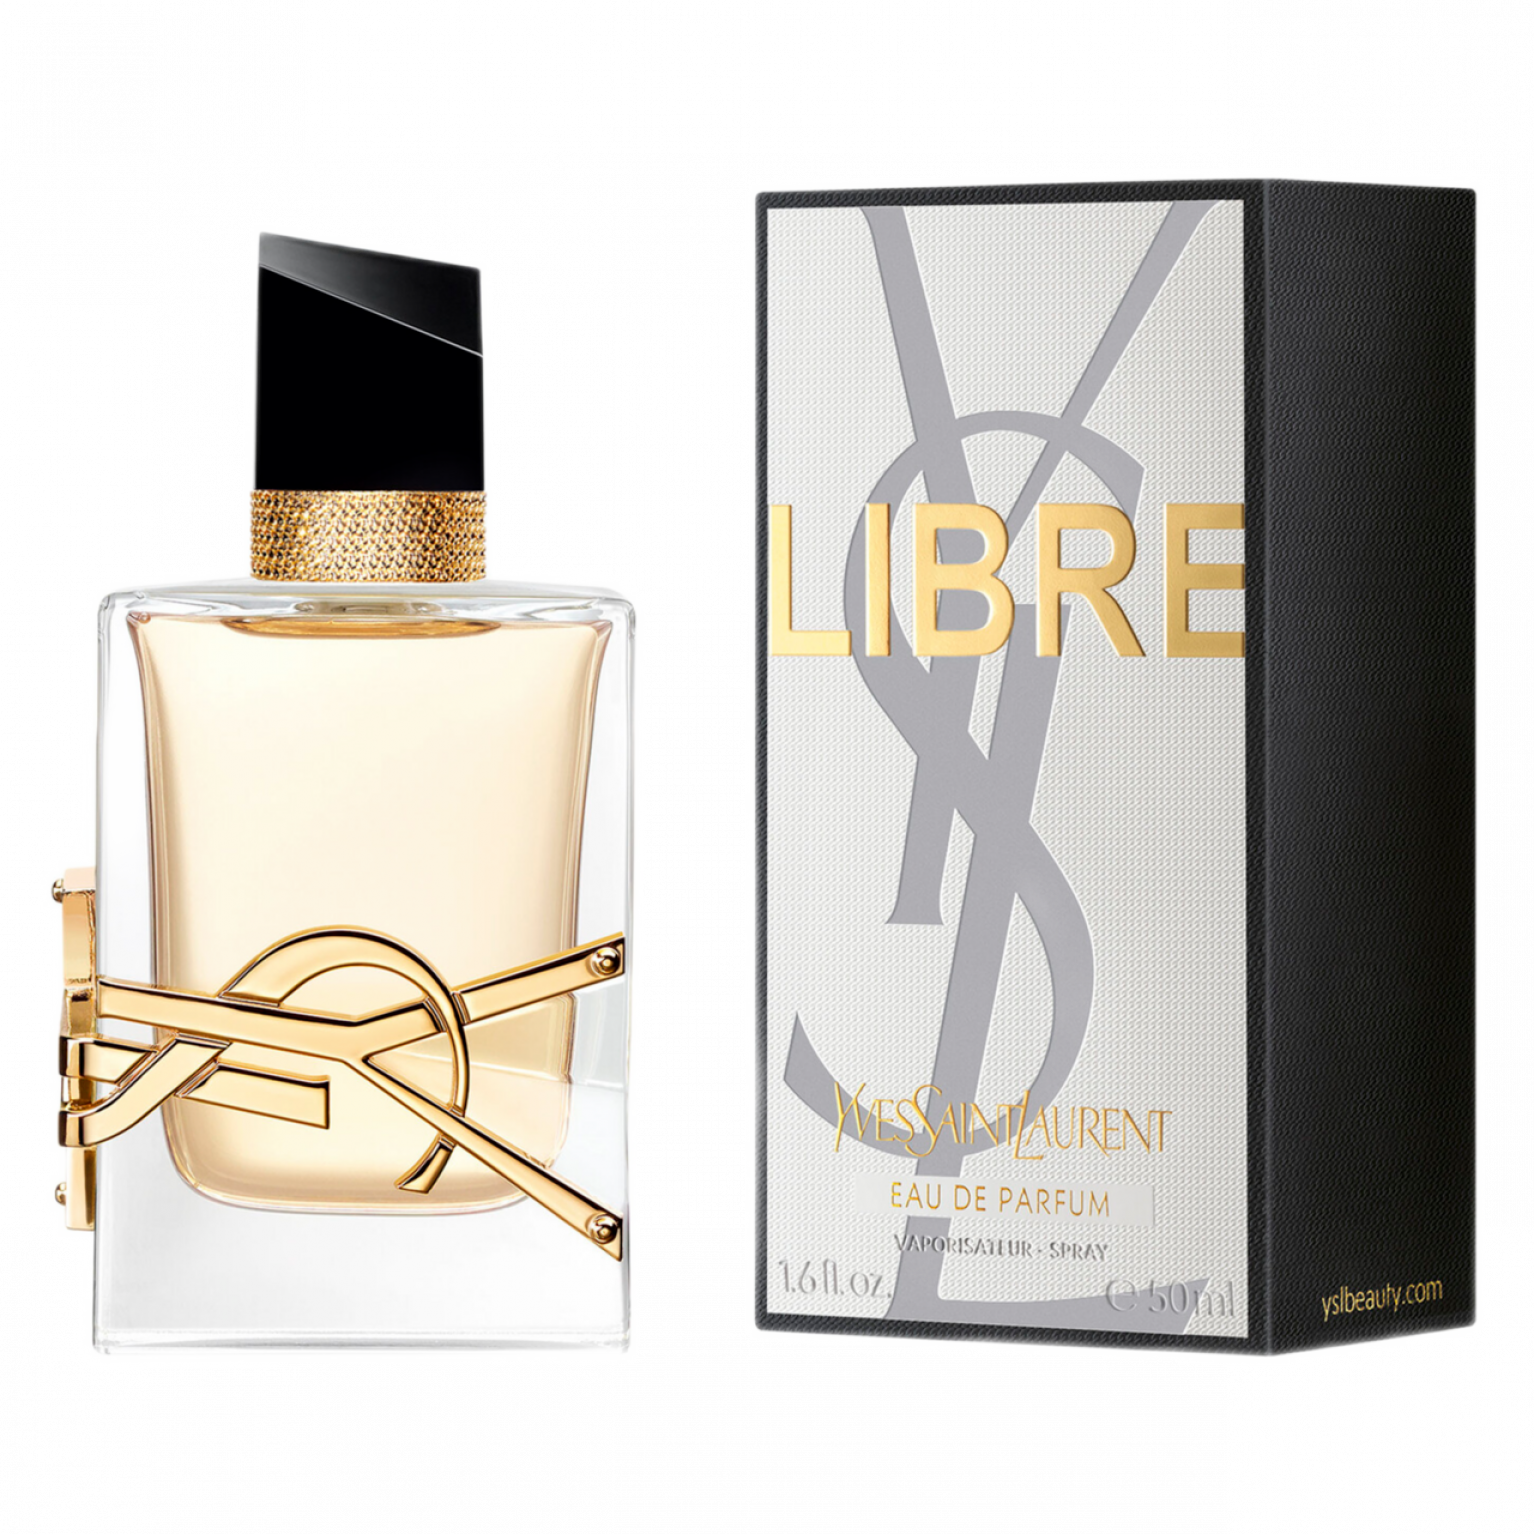 Yves Saint Laurent Libre Eau de parfum 50ml